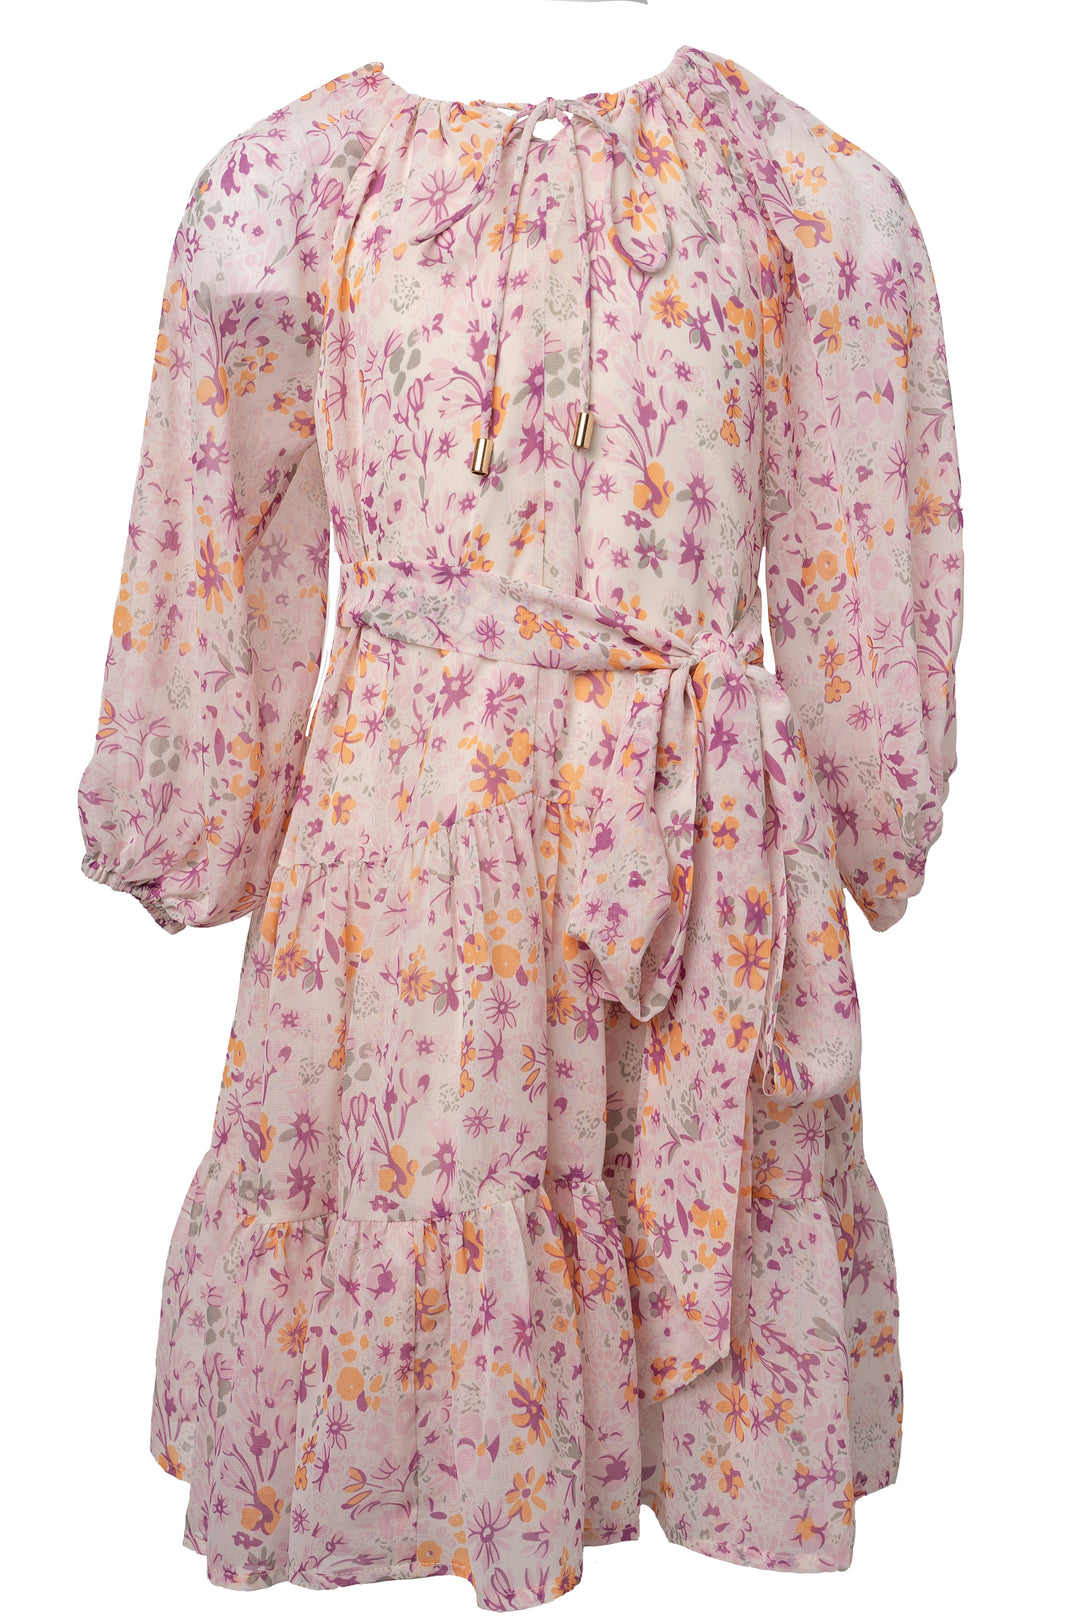 Mini Imogen Dress in Blush - FINAL SALE